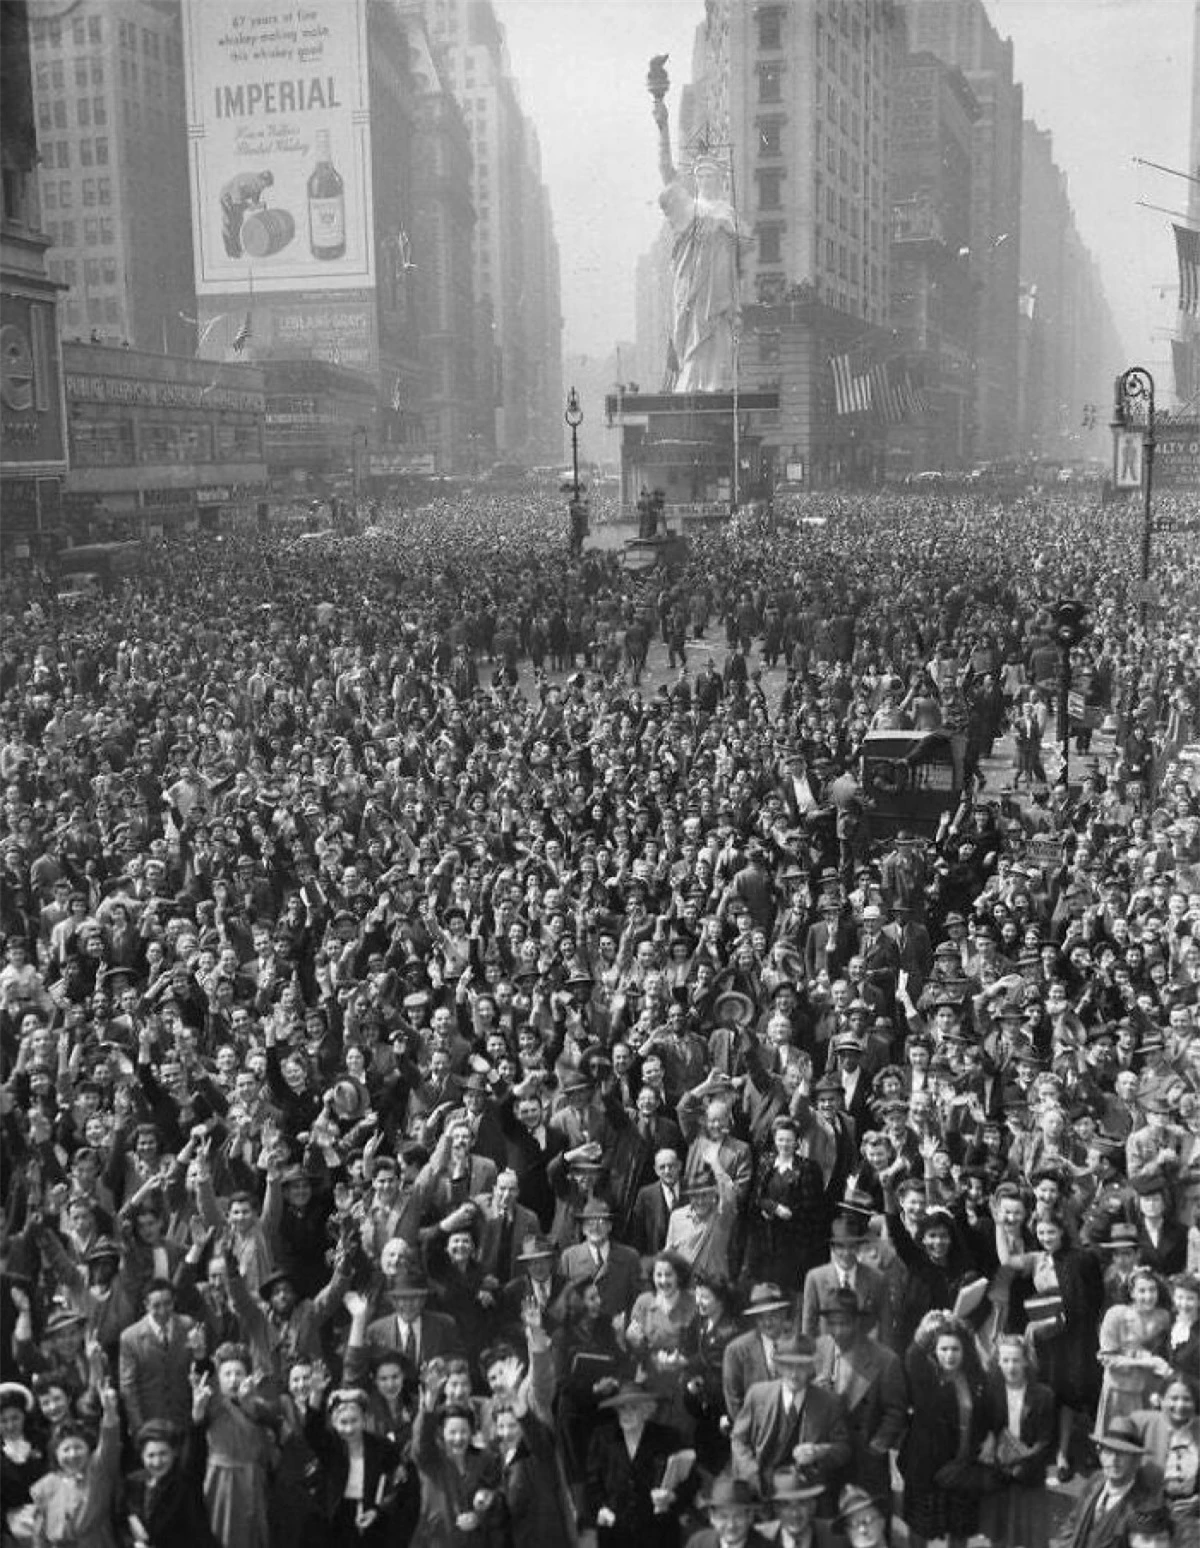 Đám đông ở Quảng trường Thời đại, thành phố New York ăn mừng quân Đức đầu hàng ngày 7/5/1945.